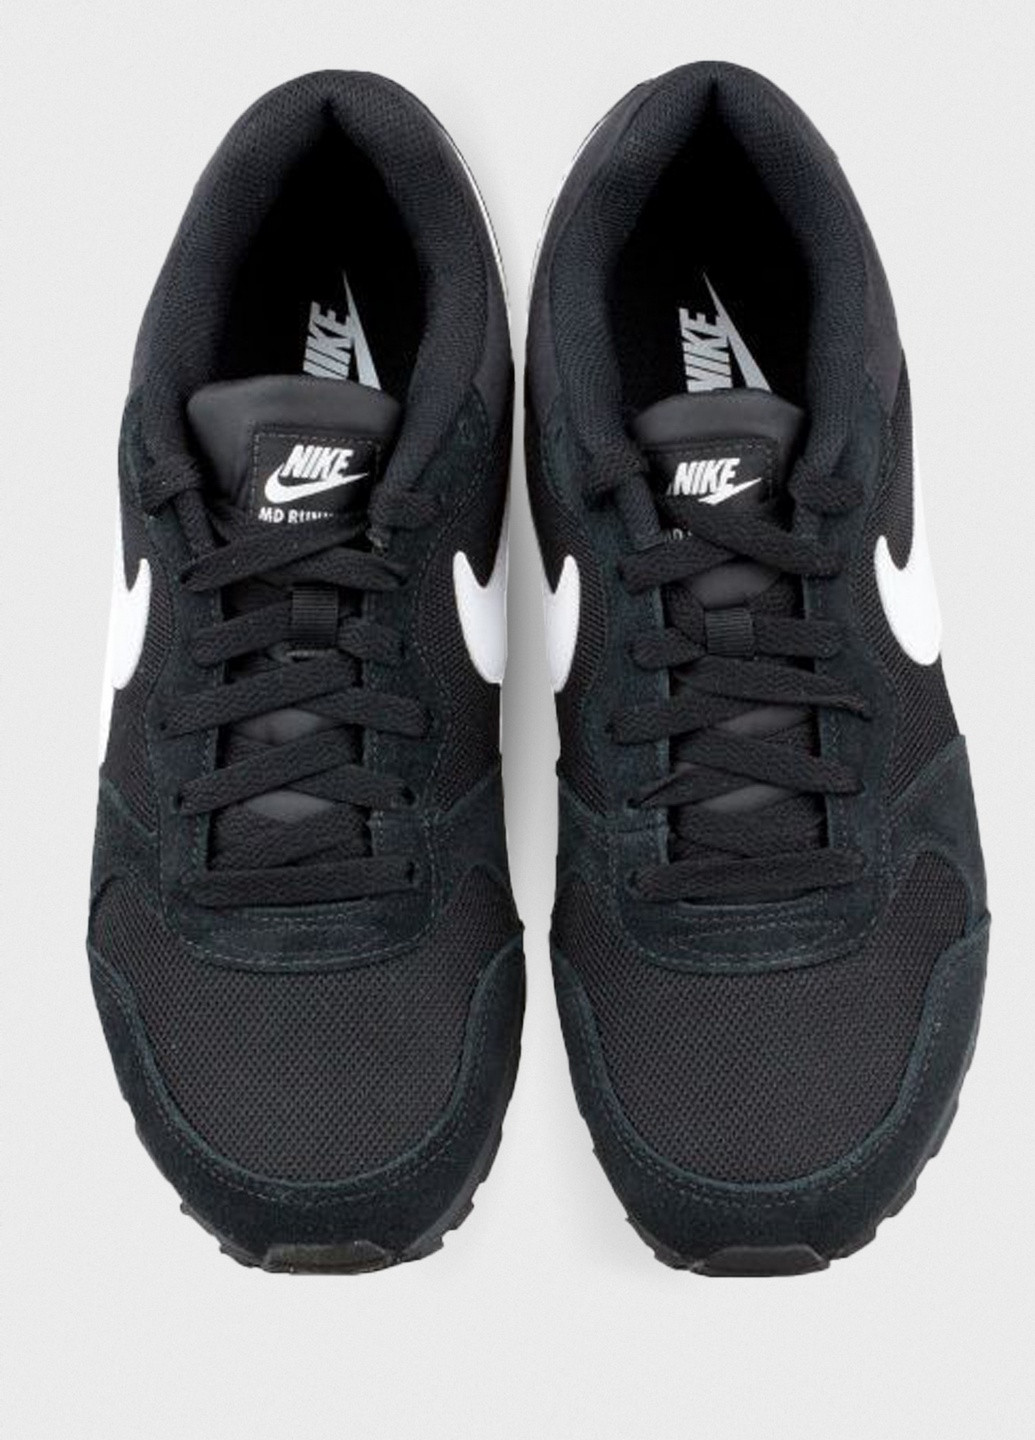 Черные всесезонные кроссовки 749794-010 Nike MD RUNNER 2